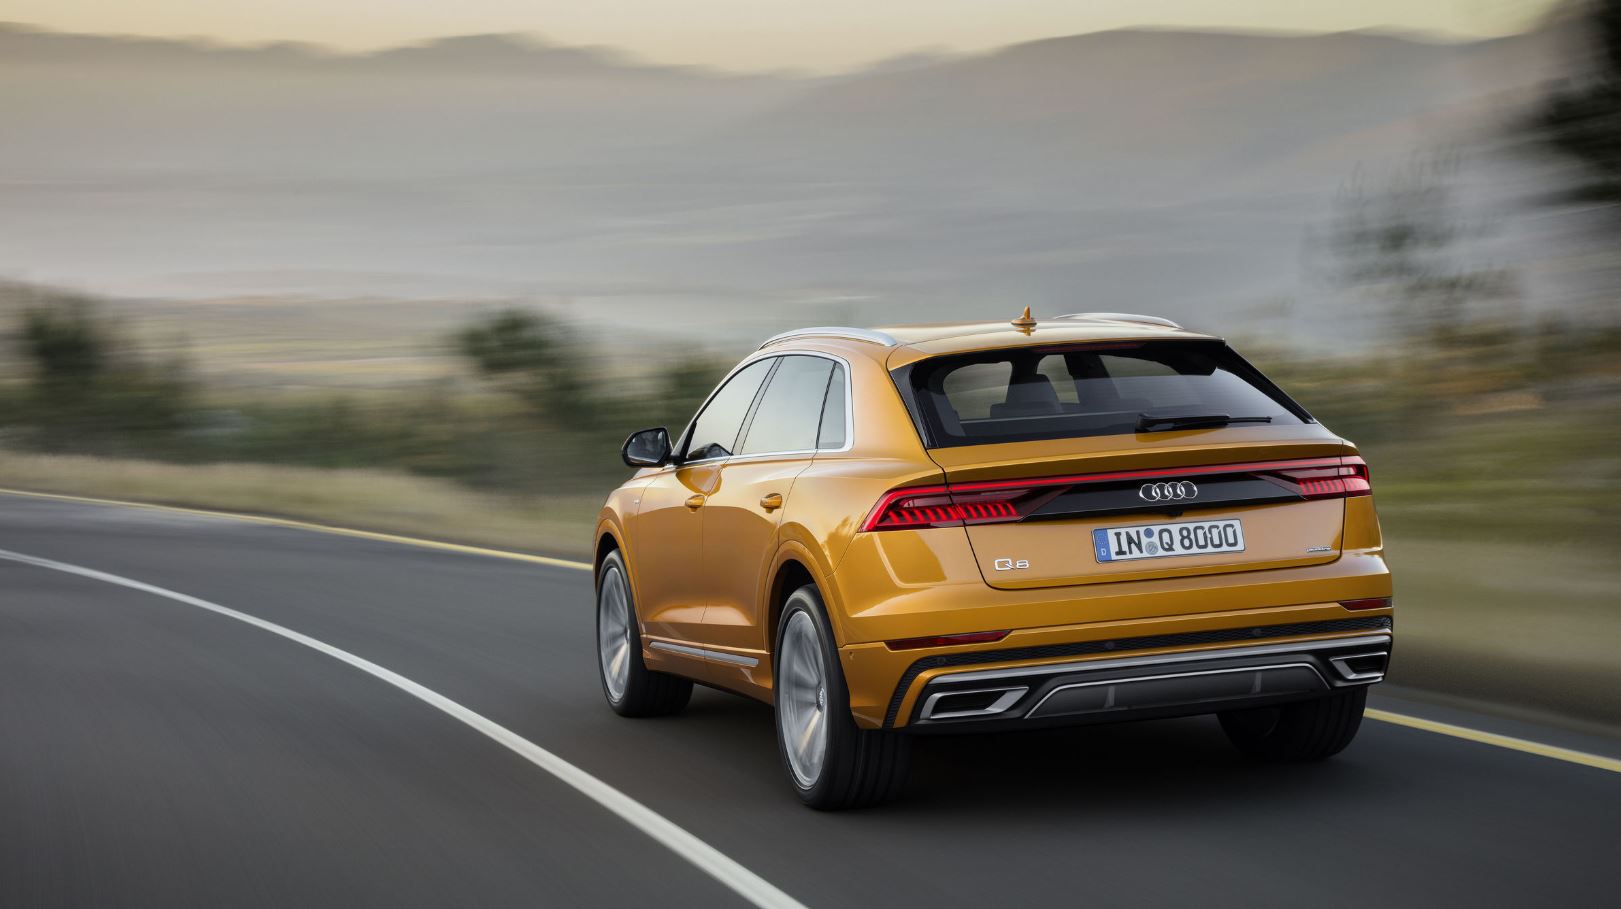 Yeni Audi Q8 resmi olarak tanıtıldı; işte tüm detaylar